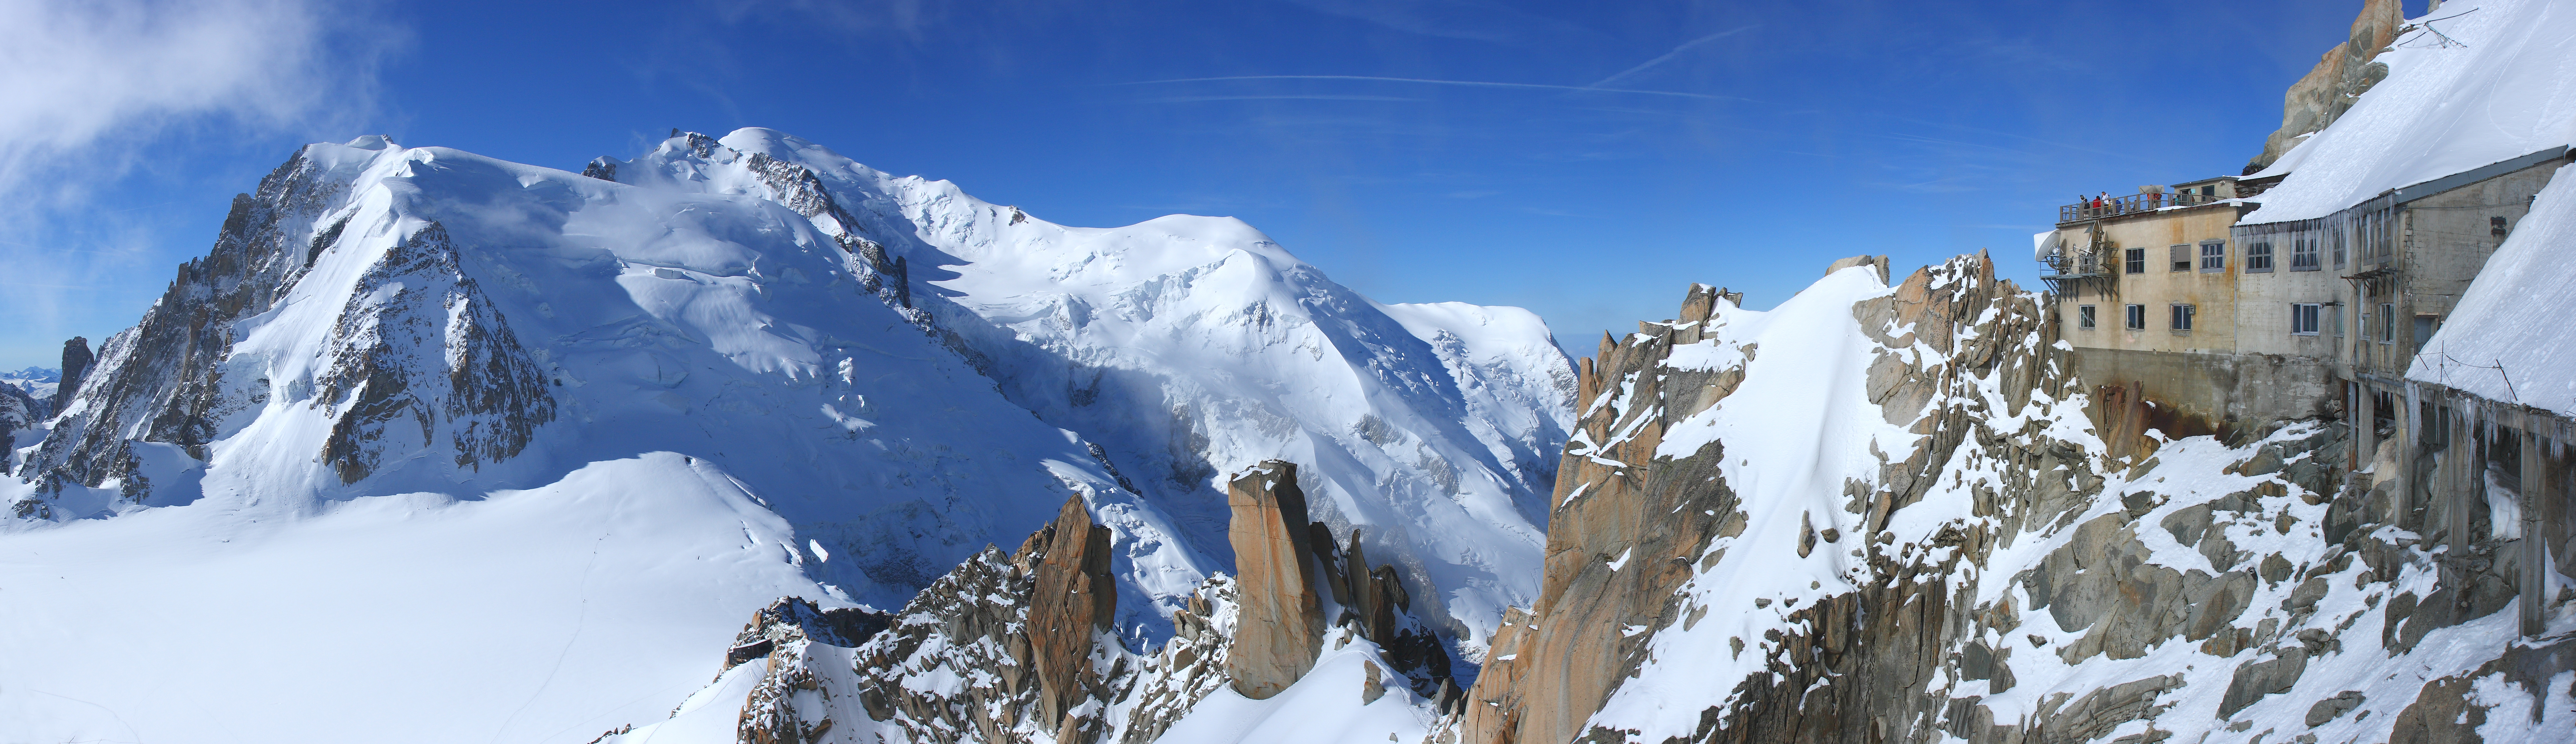 Mont Blanc - Wikipedia